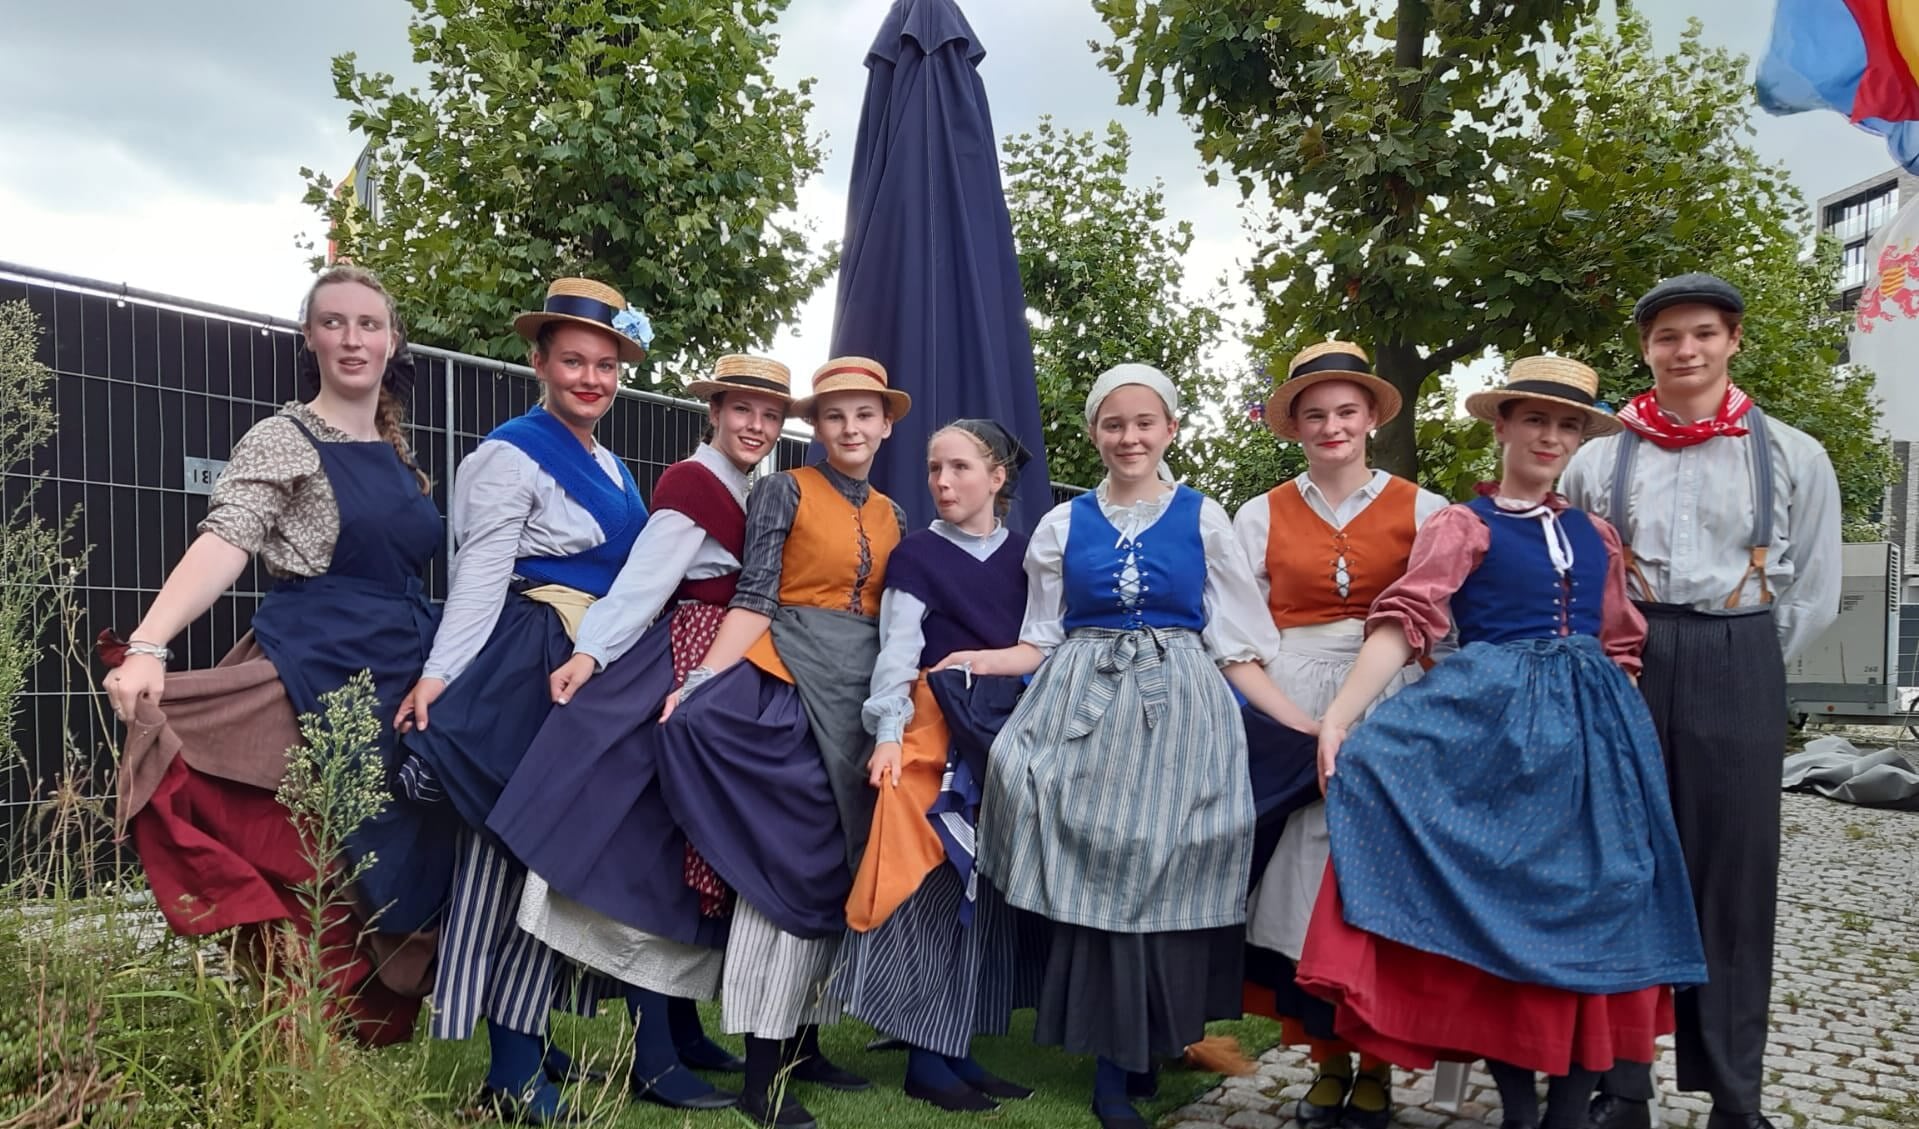 De Boezeroenen (tiener/jeugd demogroep) uit het Belgische Hasselt zal tijdens de folkloremiddag tijdens de braderie optreden. Foto: PR